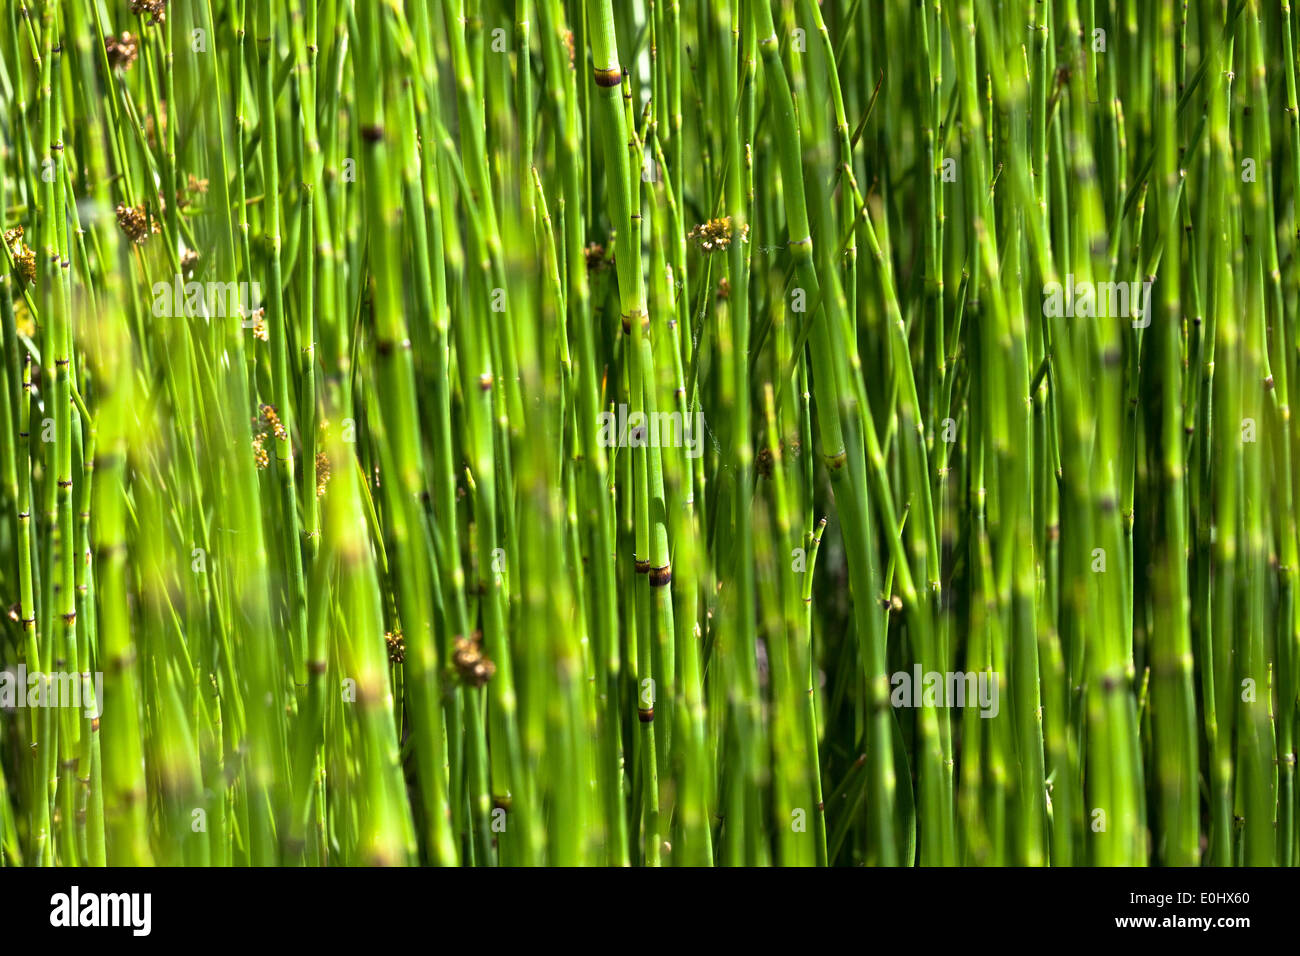 Bambus, DIE GARTEN TULLN 2009, bamboo Stock Photo